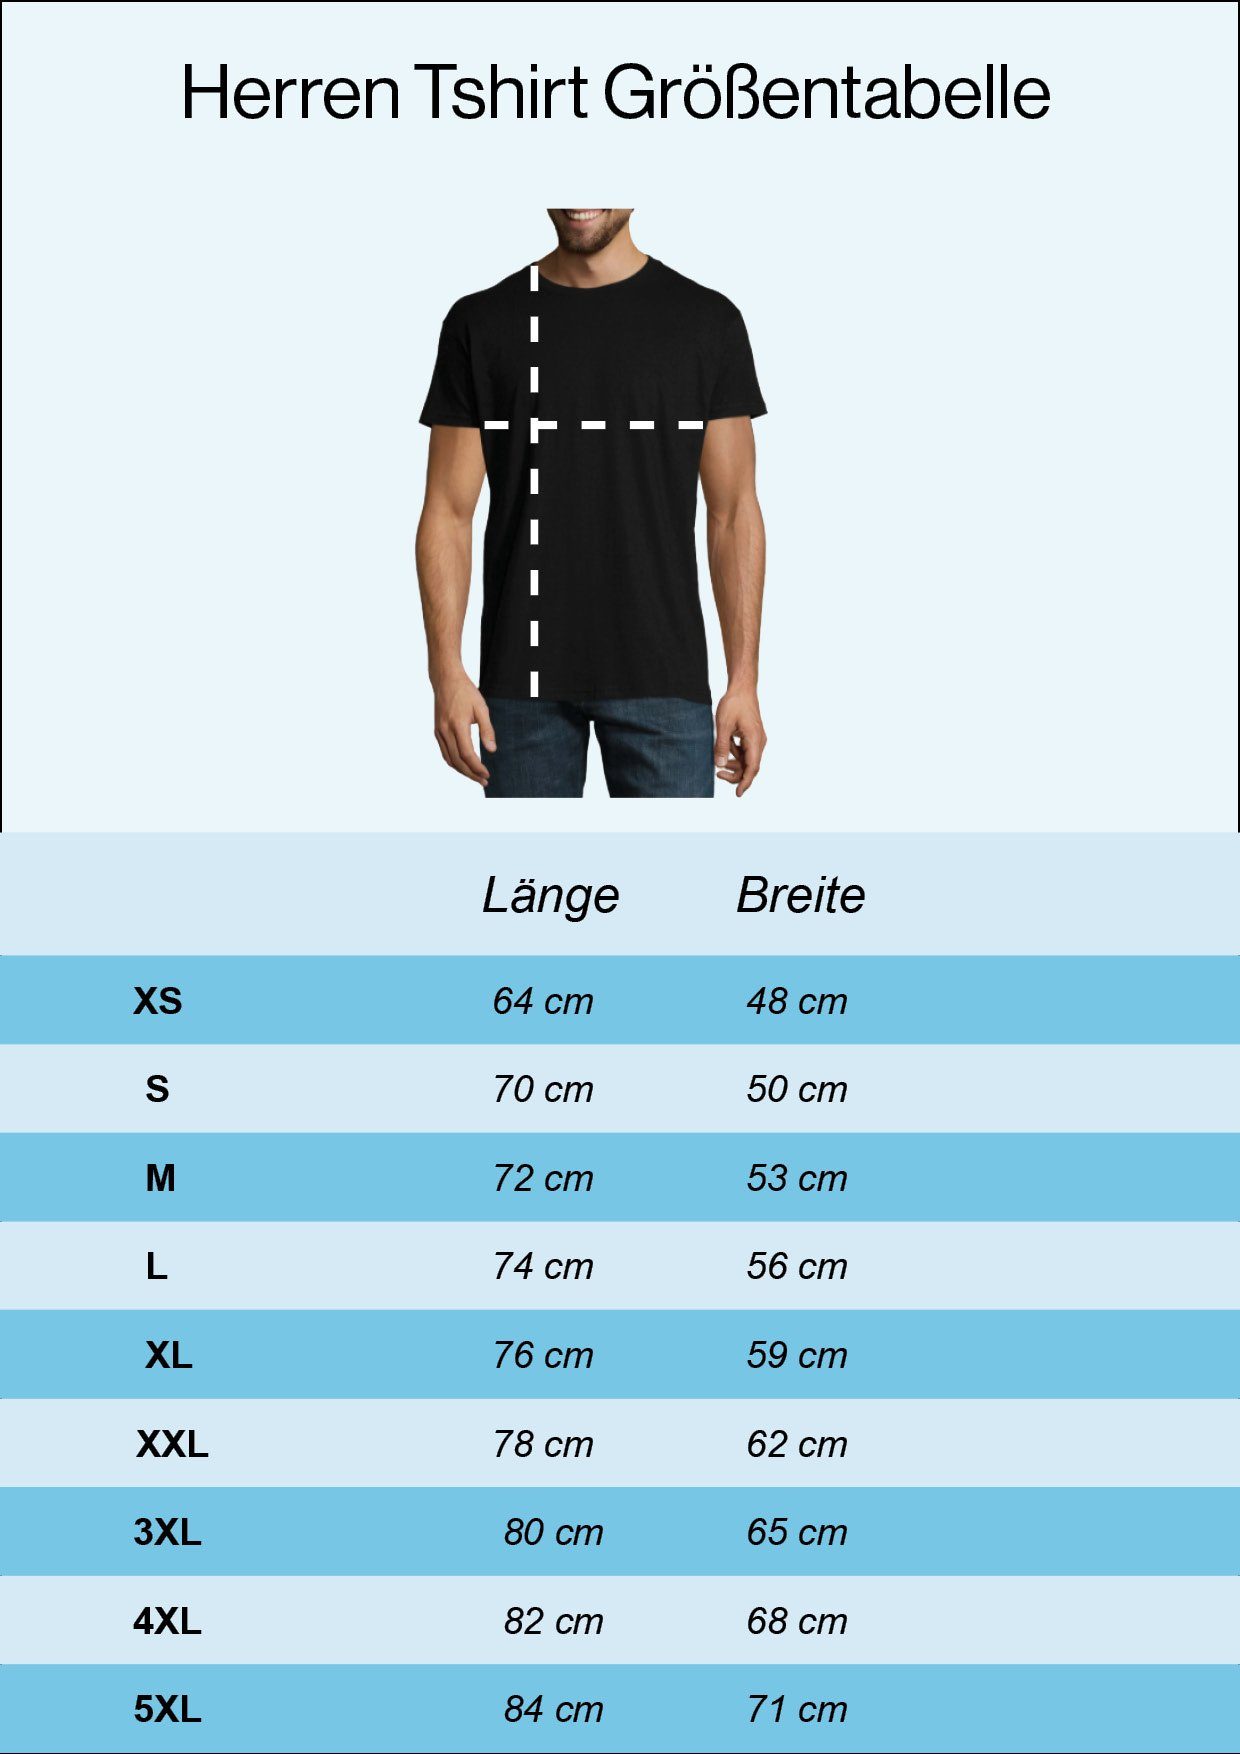 Navy Deutschland mit trendigem Herz Youth T-Shirt Frontprint T-Shirt Designz Herren